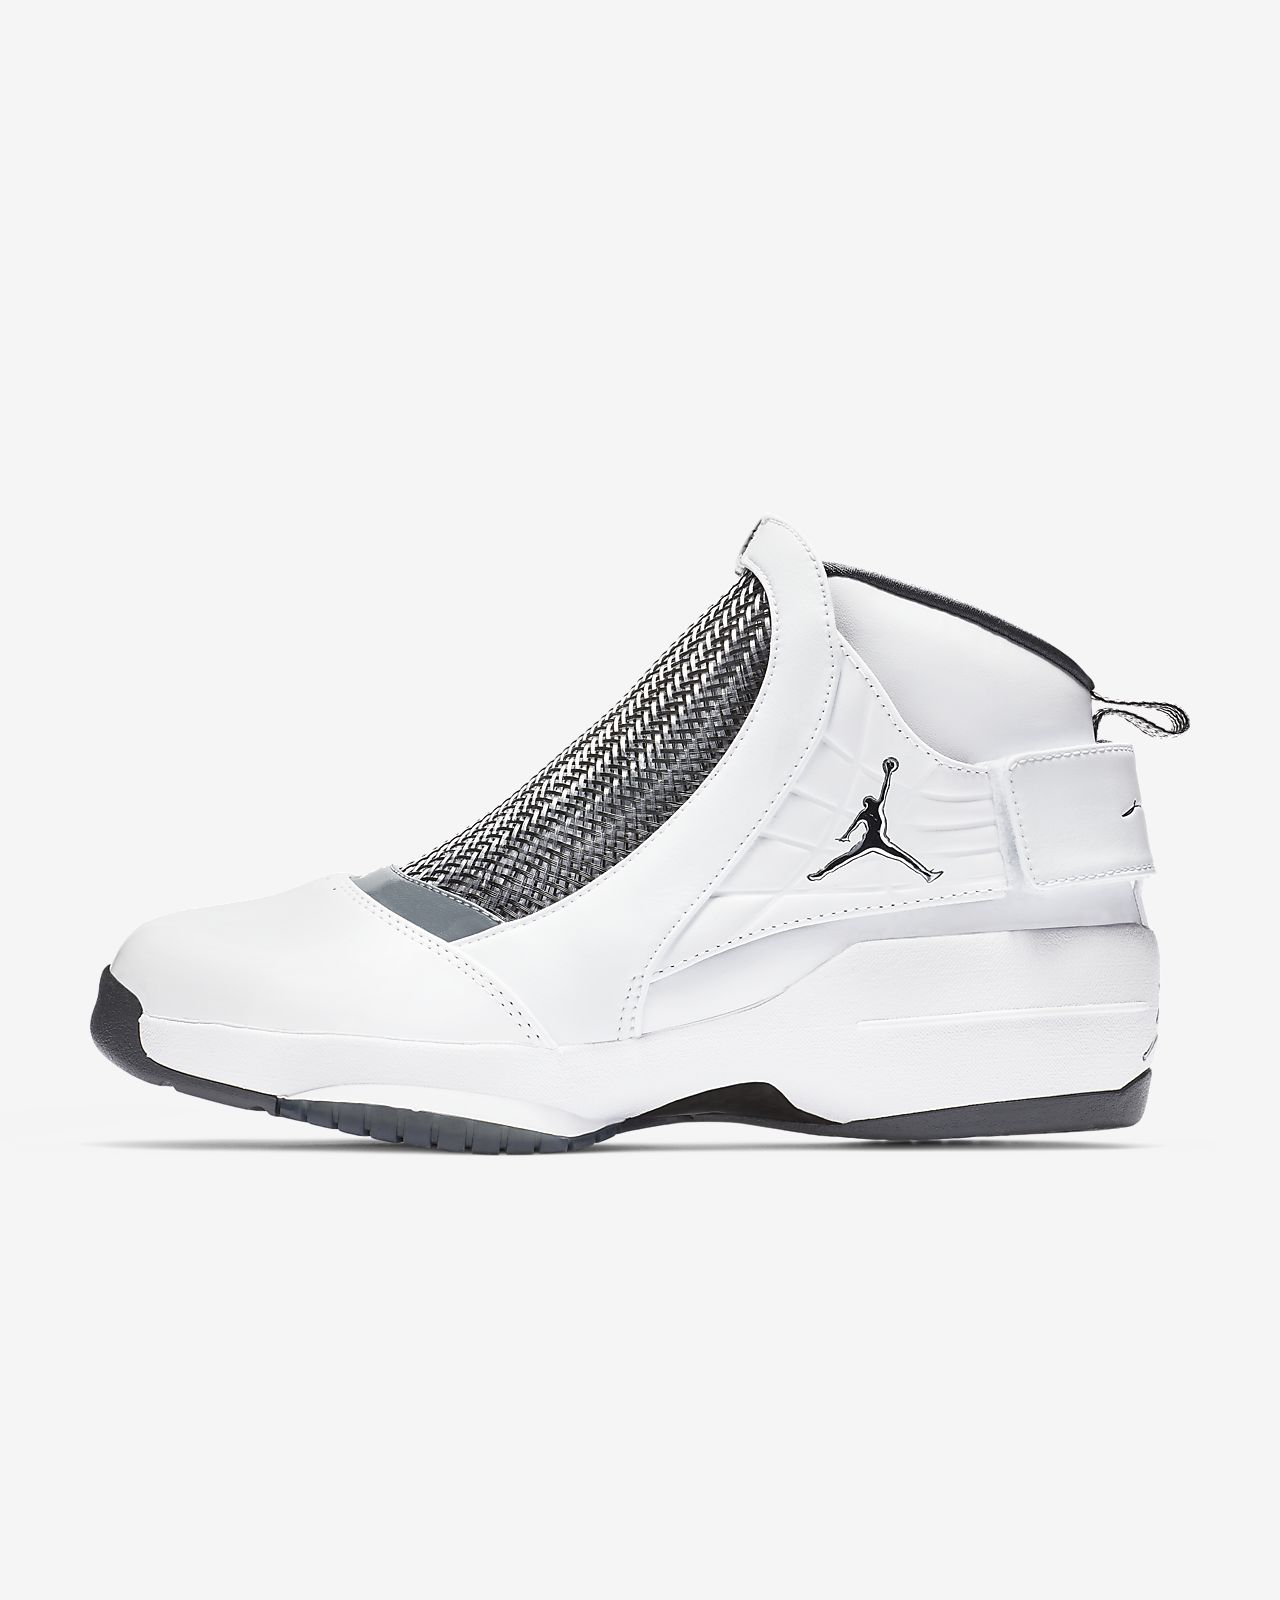 Air Jordan 19 Retro 复刻男子运动鞋